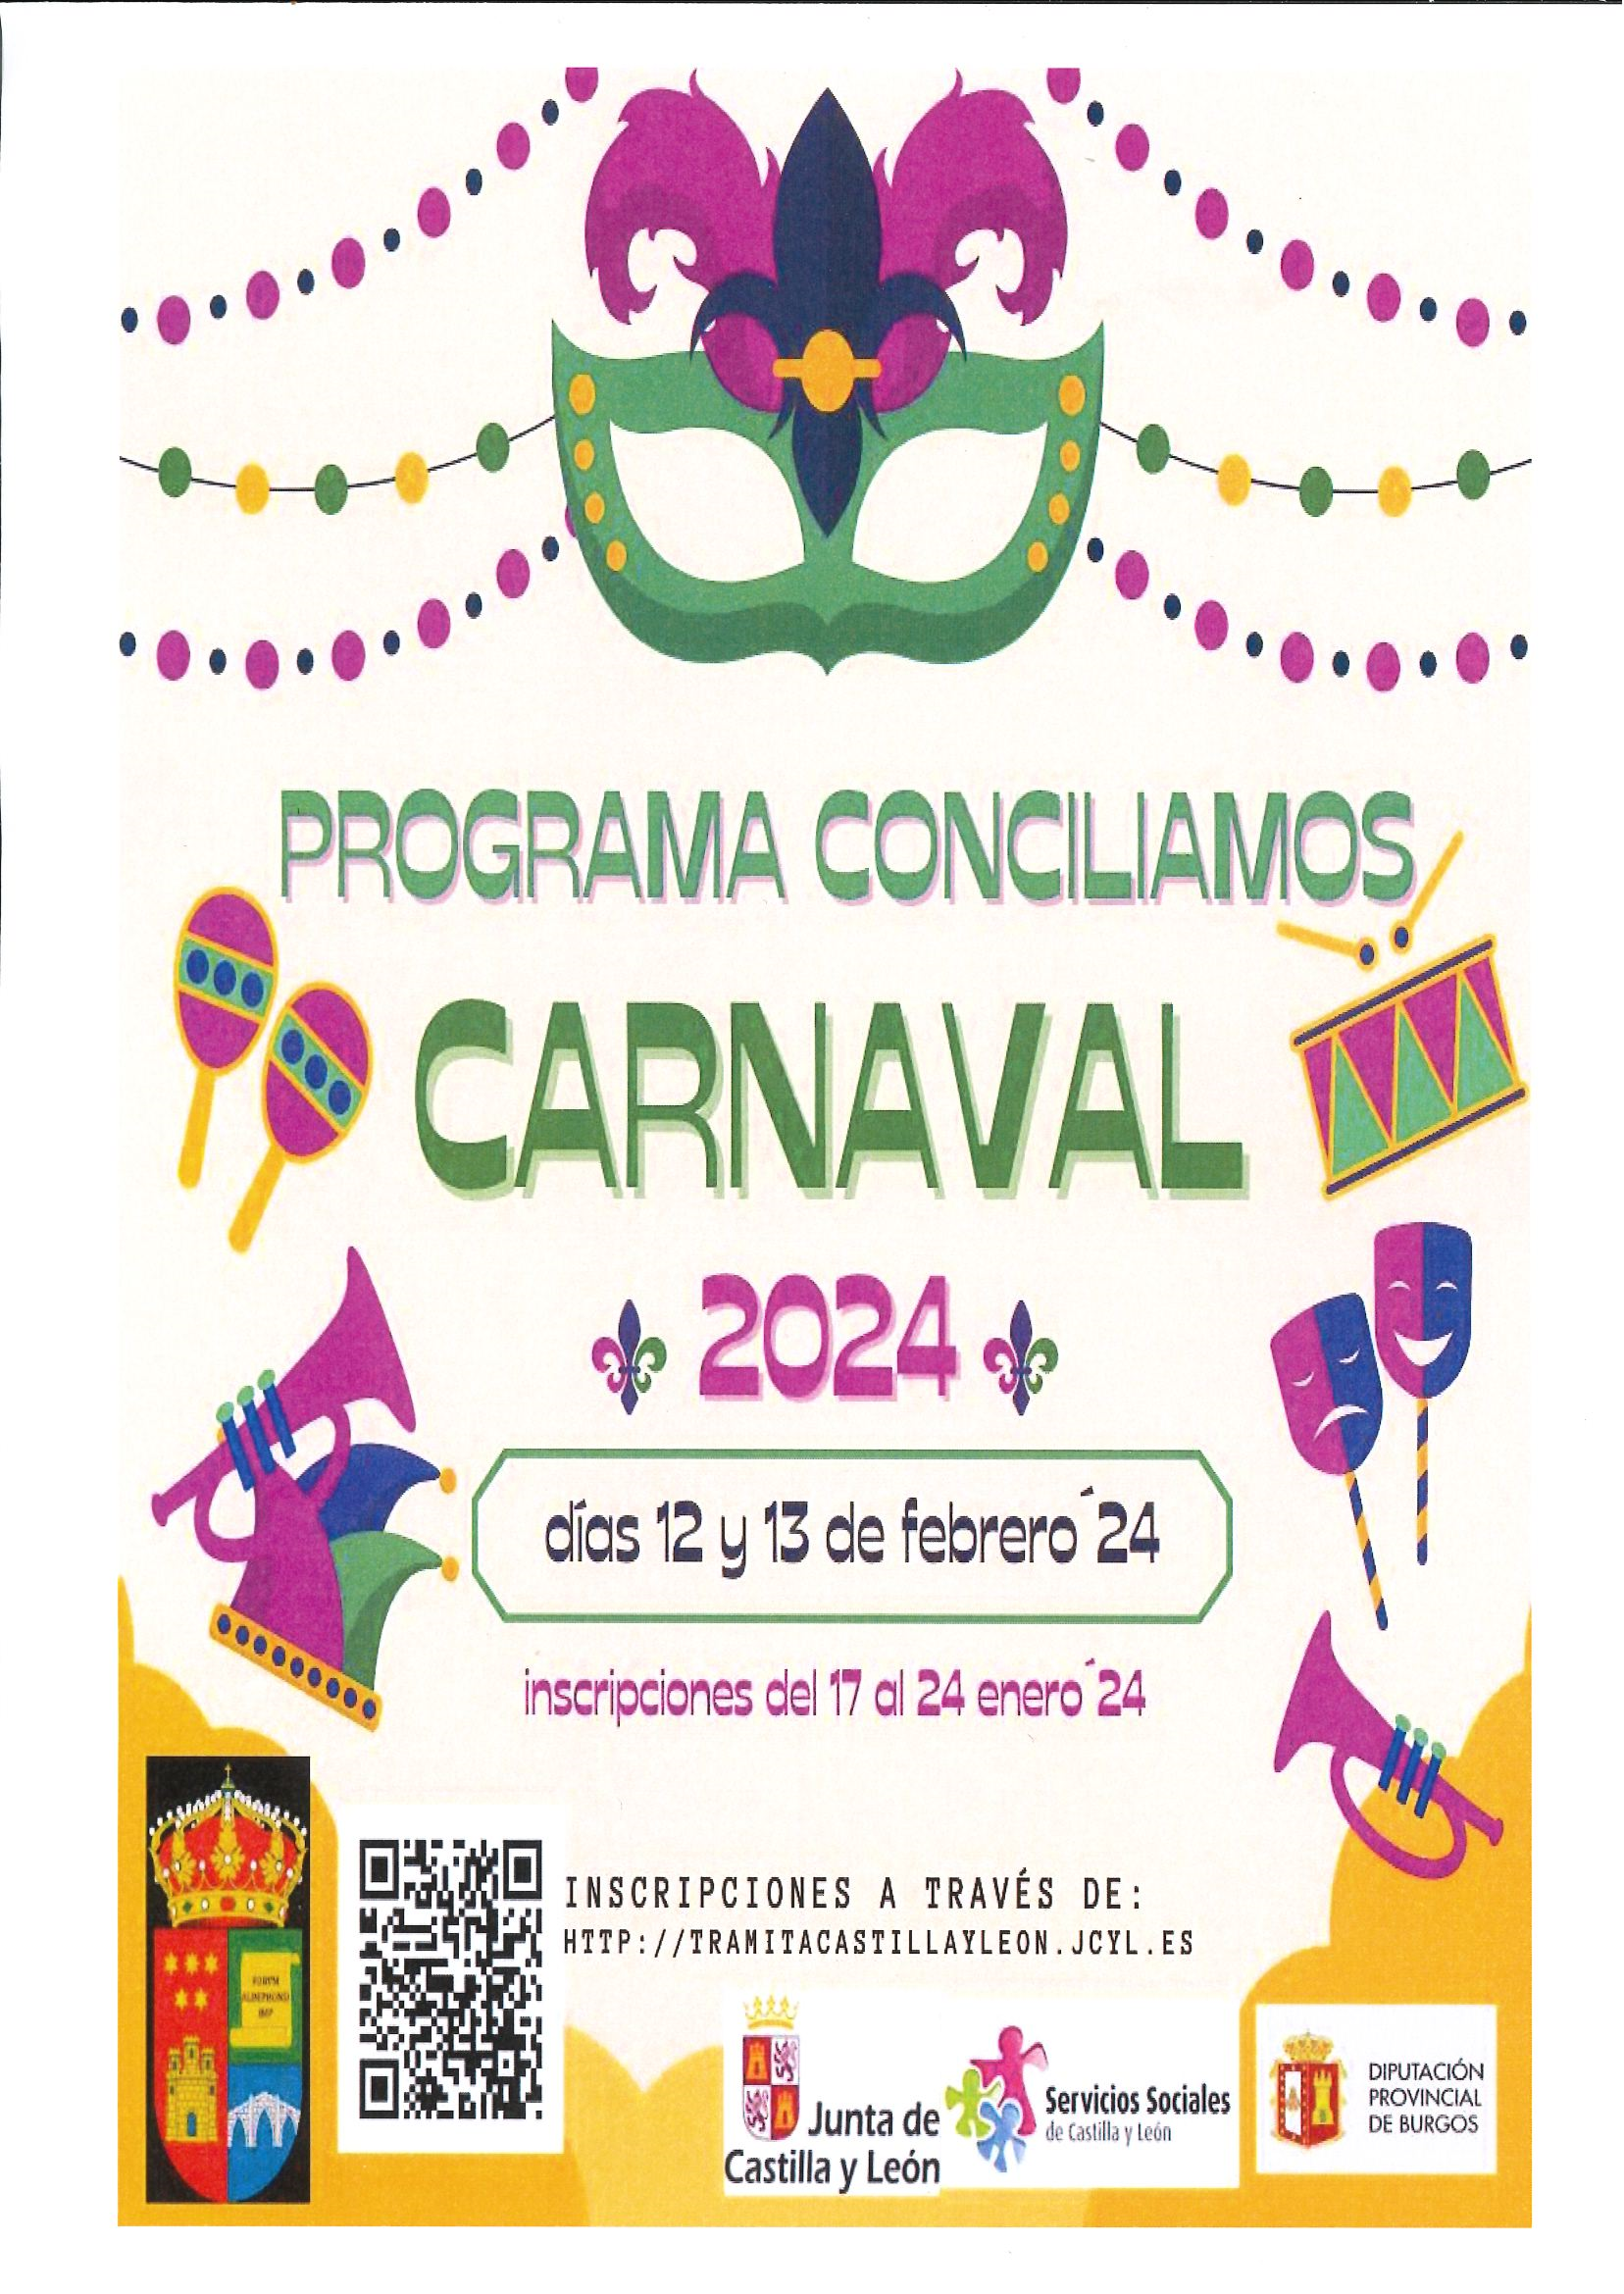 Conciliamos Carnaval 2024